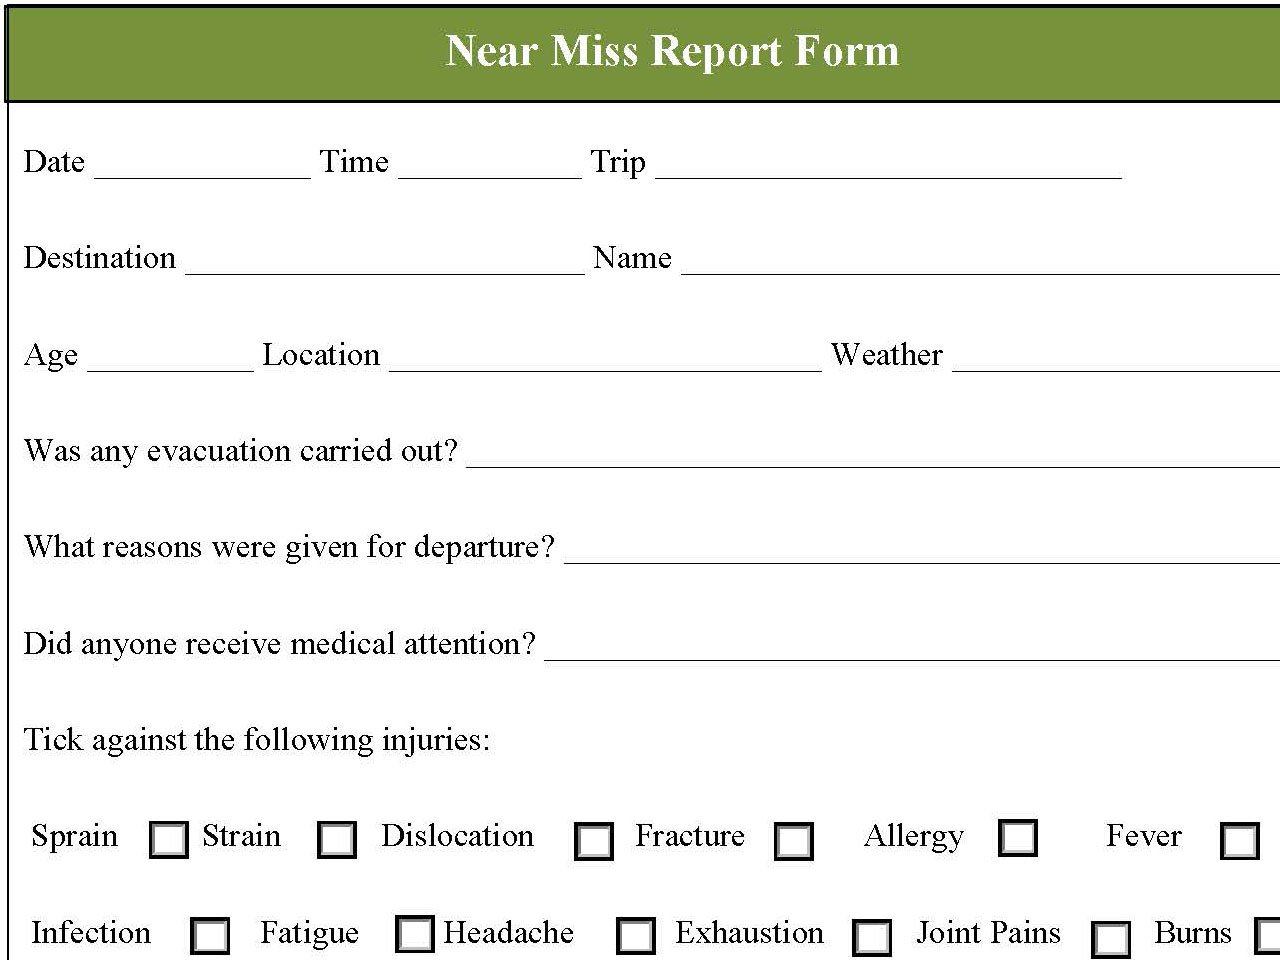 Near Miss Report Form